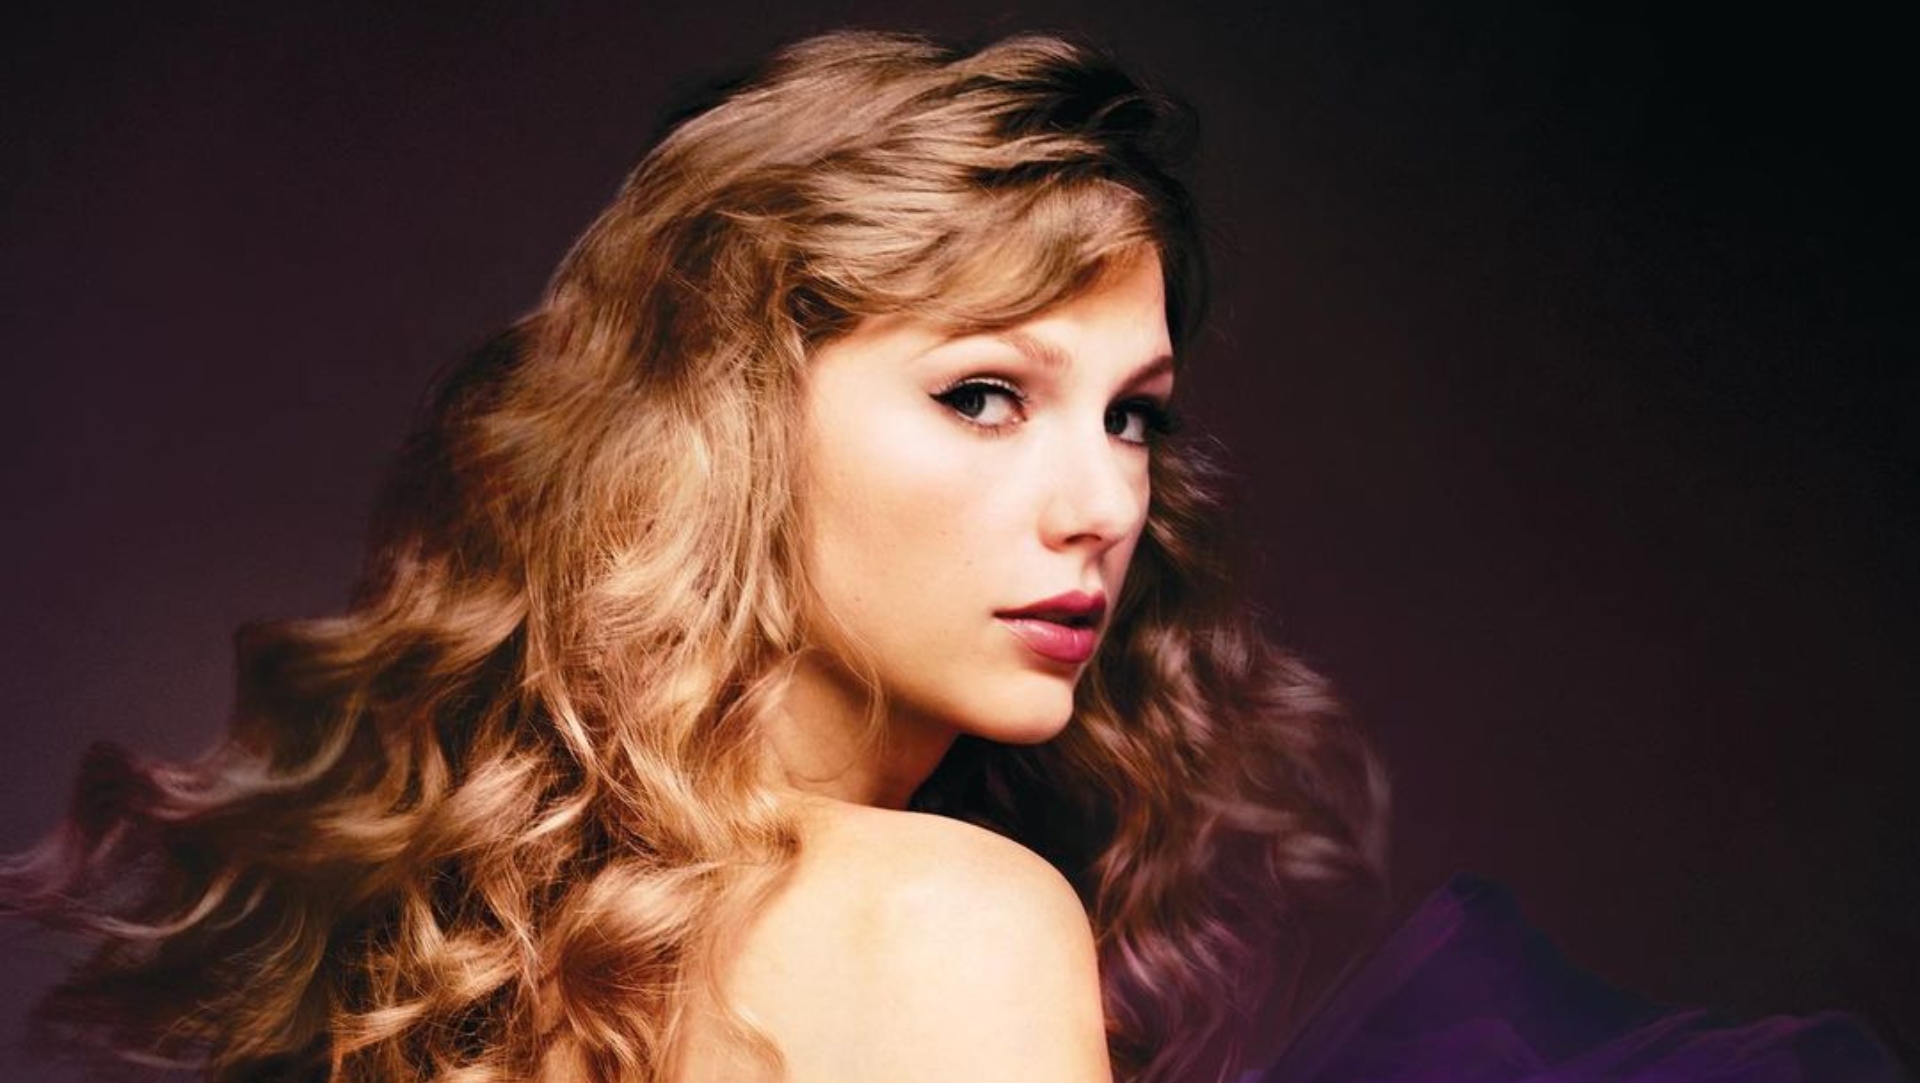 Taylor Swift en México: fechas, boletos y todo sobre “The Eras Tour 2023”